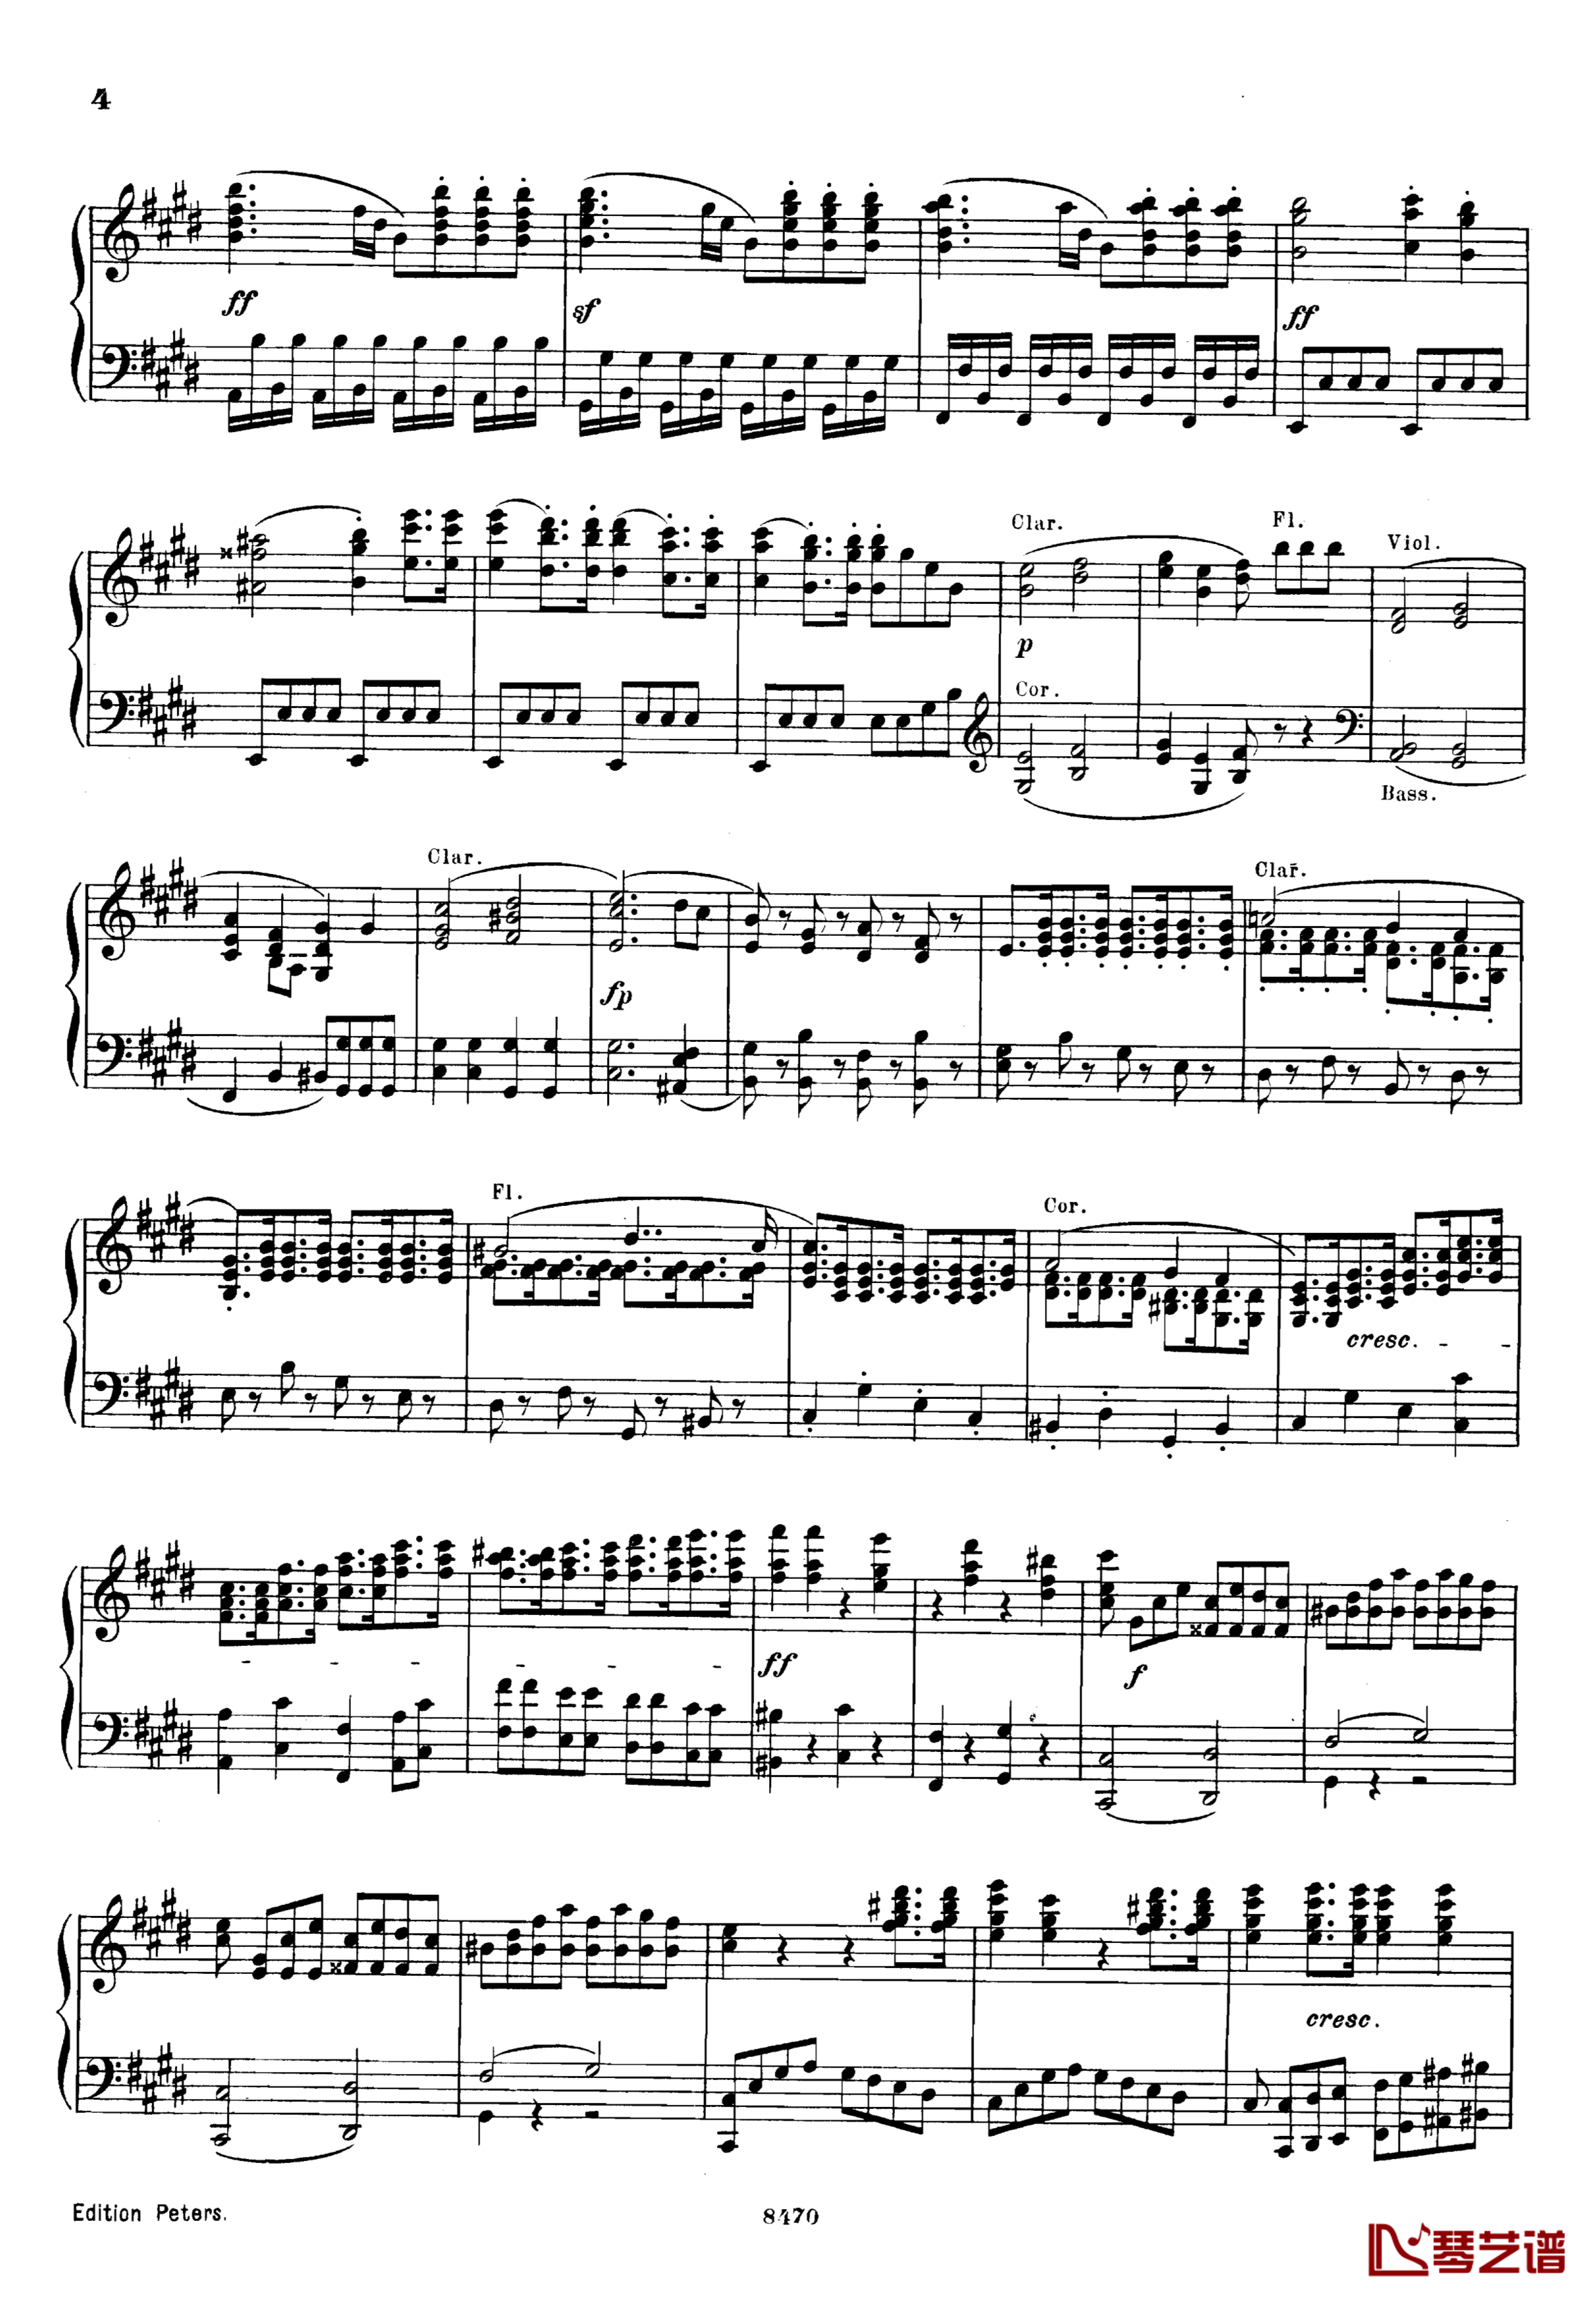 升c小调第三钢琴协奏曲Op.55钢琴谱-克里斯蒂安-里斯4